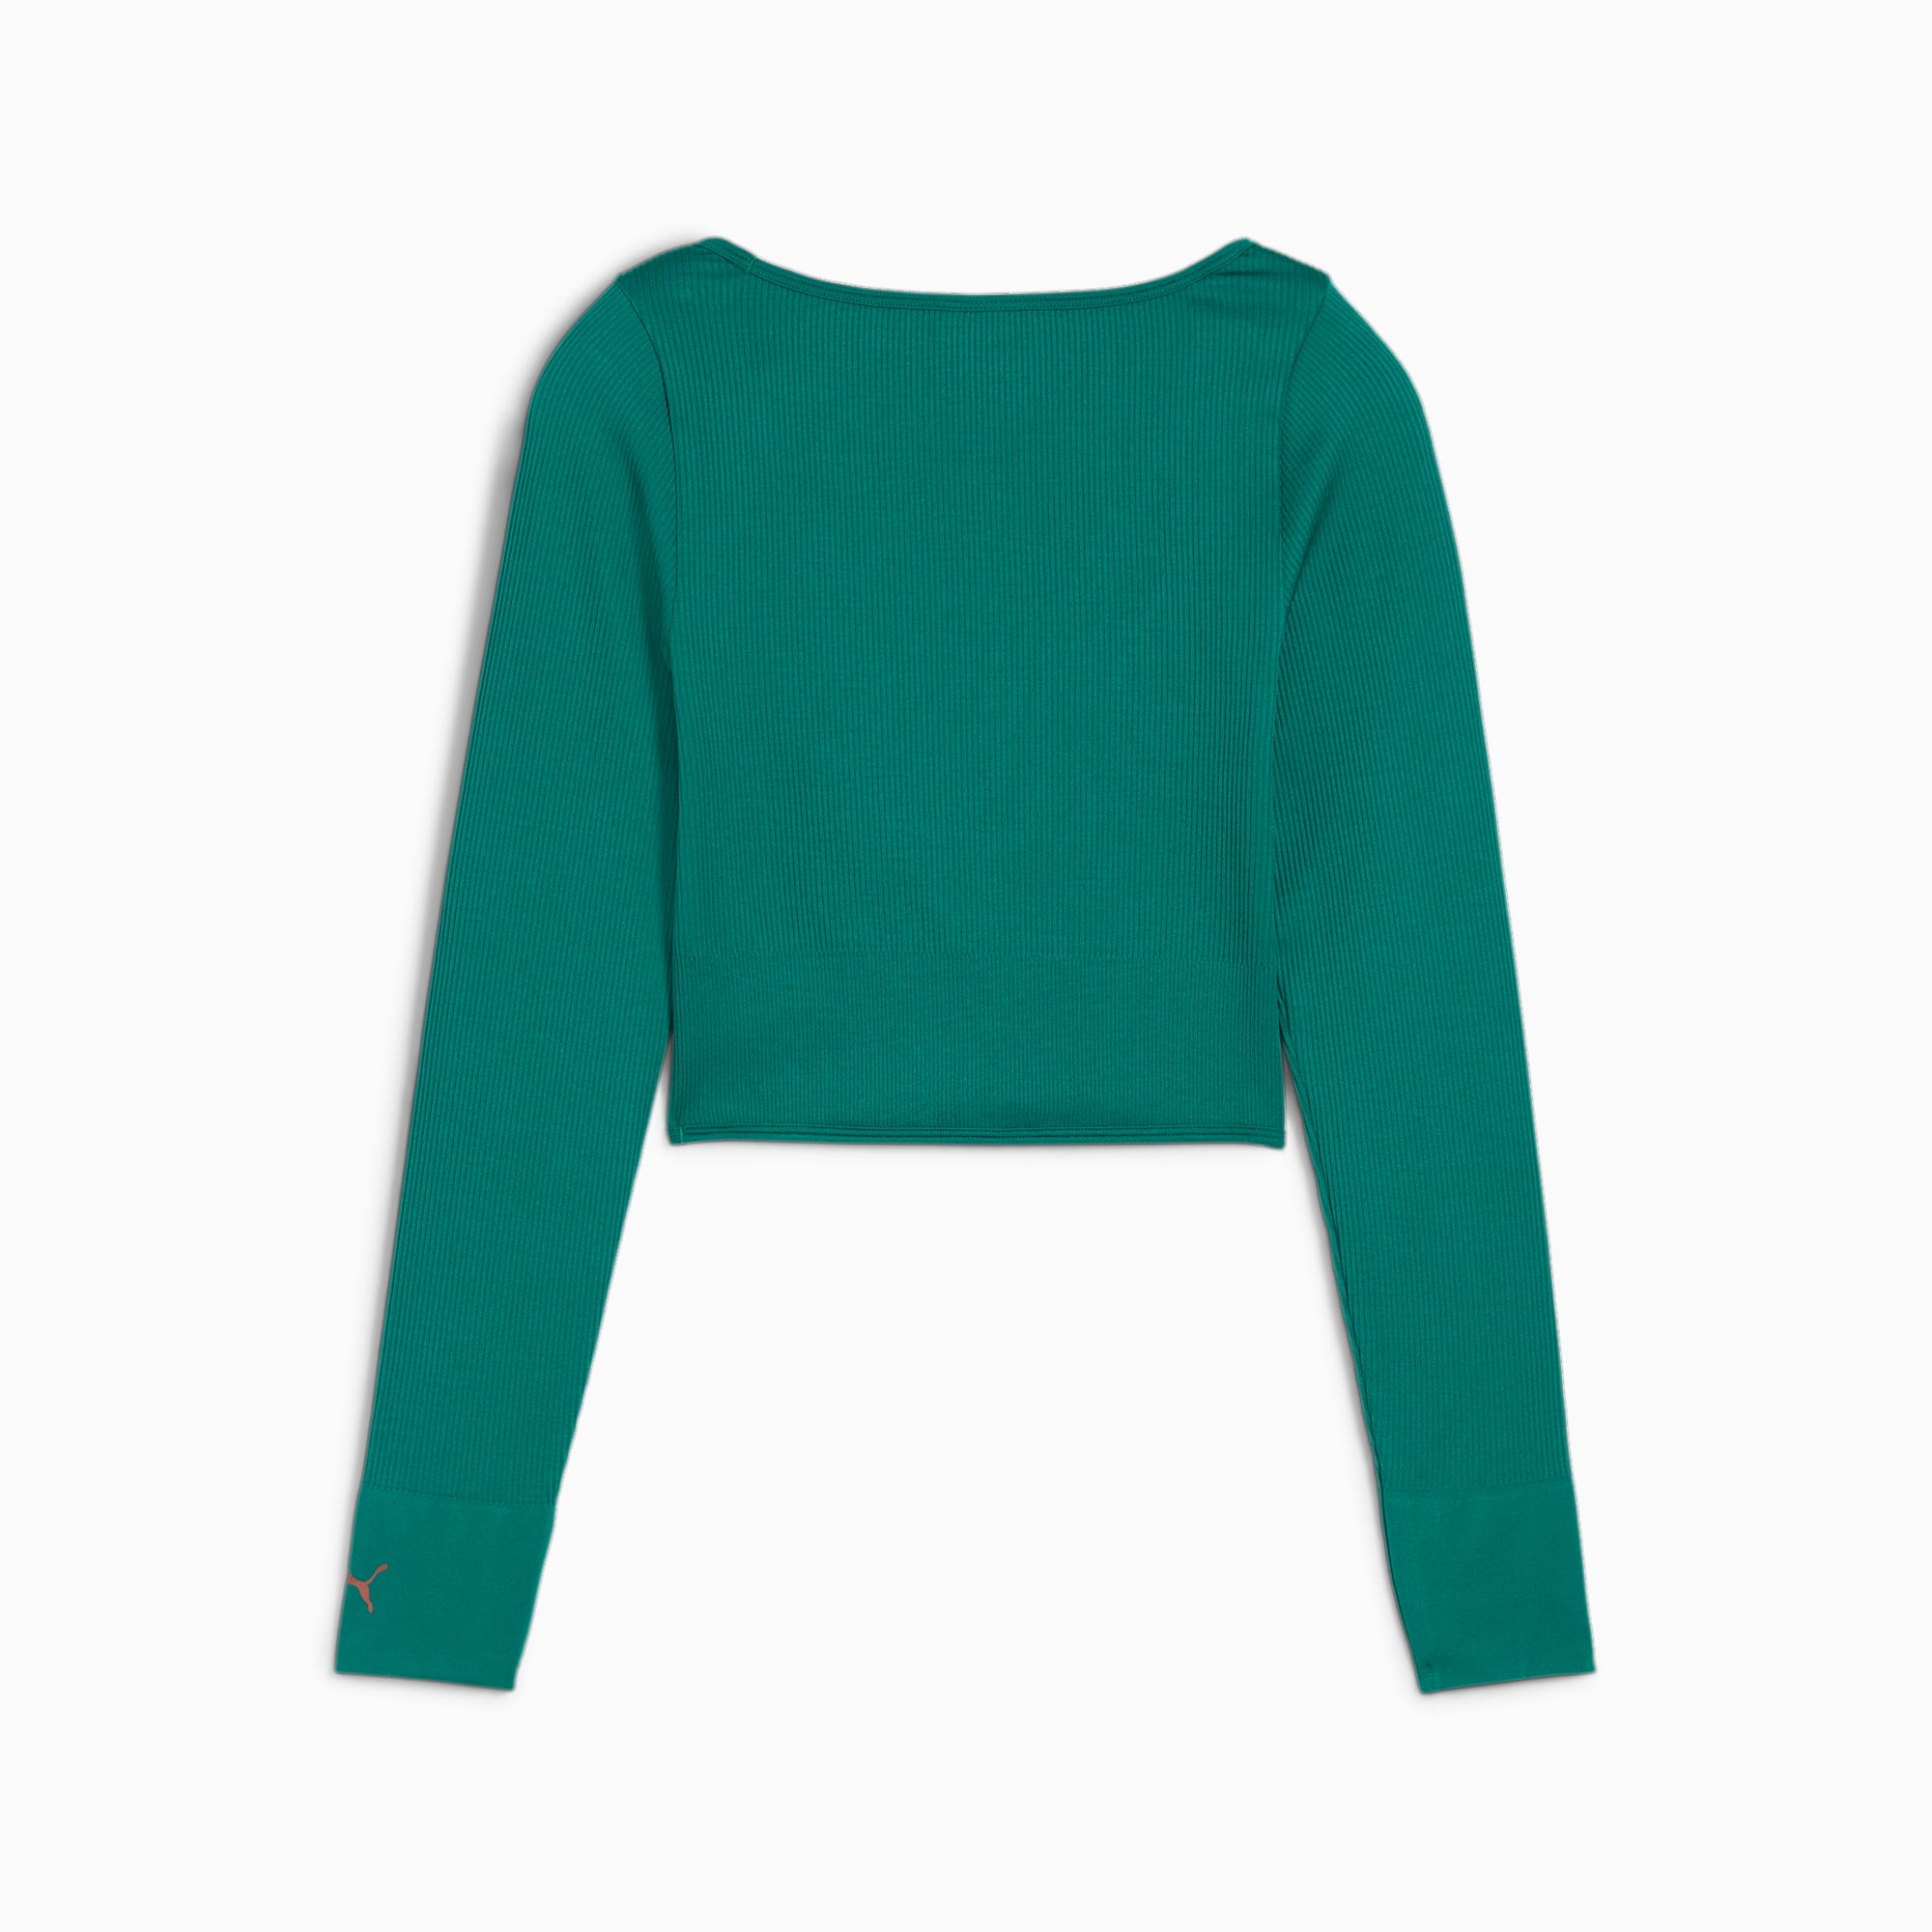 PUMA X Pamela Reif Women's Corset Long Sleeve Shirt, Magic Green, Size XXS, Clothing